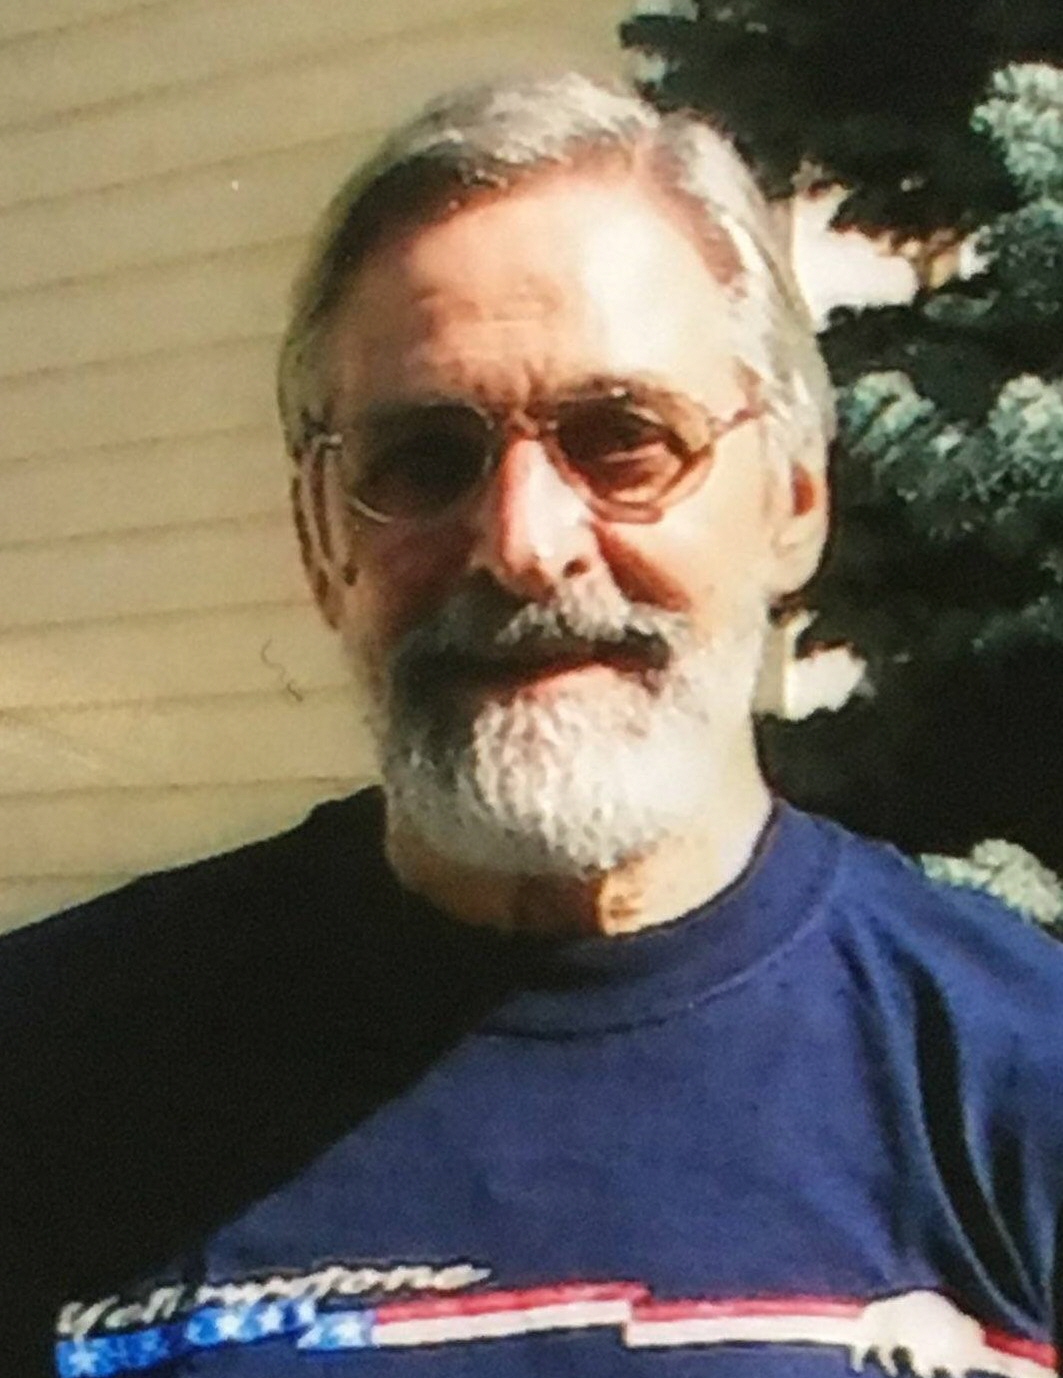 Obituary information for John J. Salamone